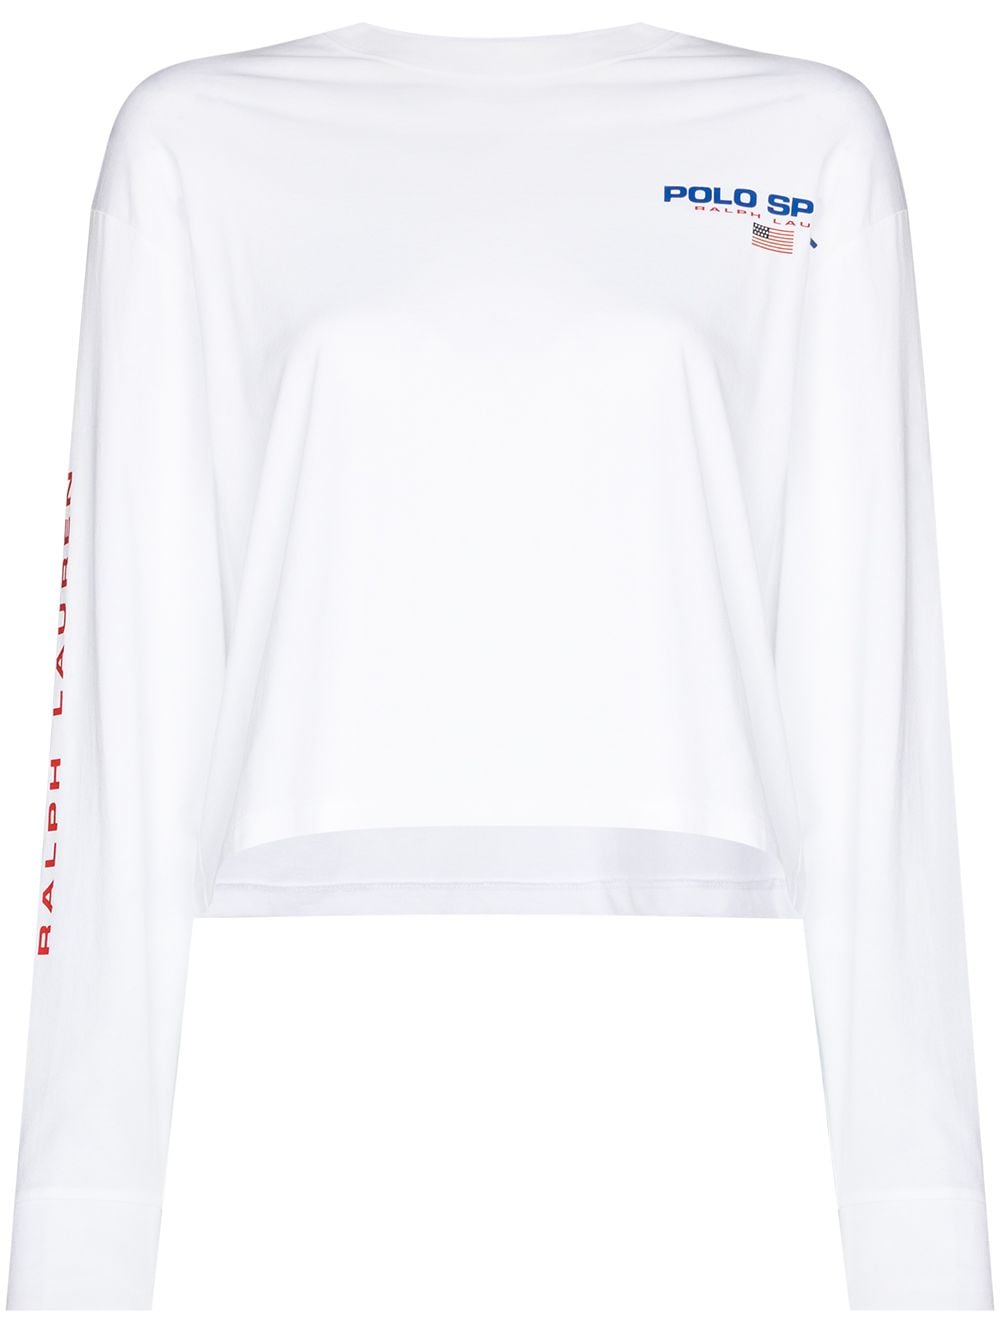 фото Polo ralph lauren sport футболка с длинными рукавами и логотипом